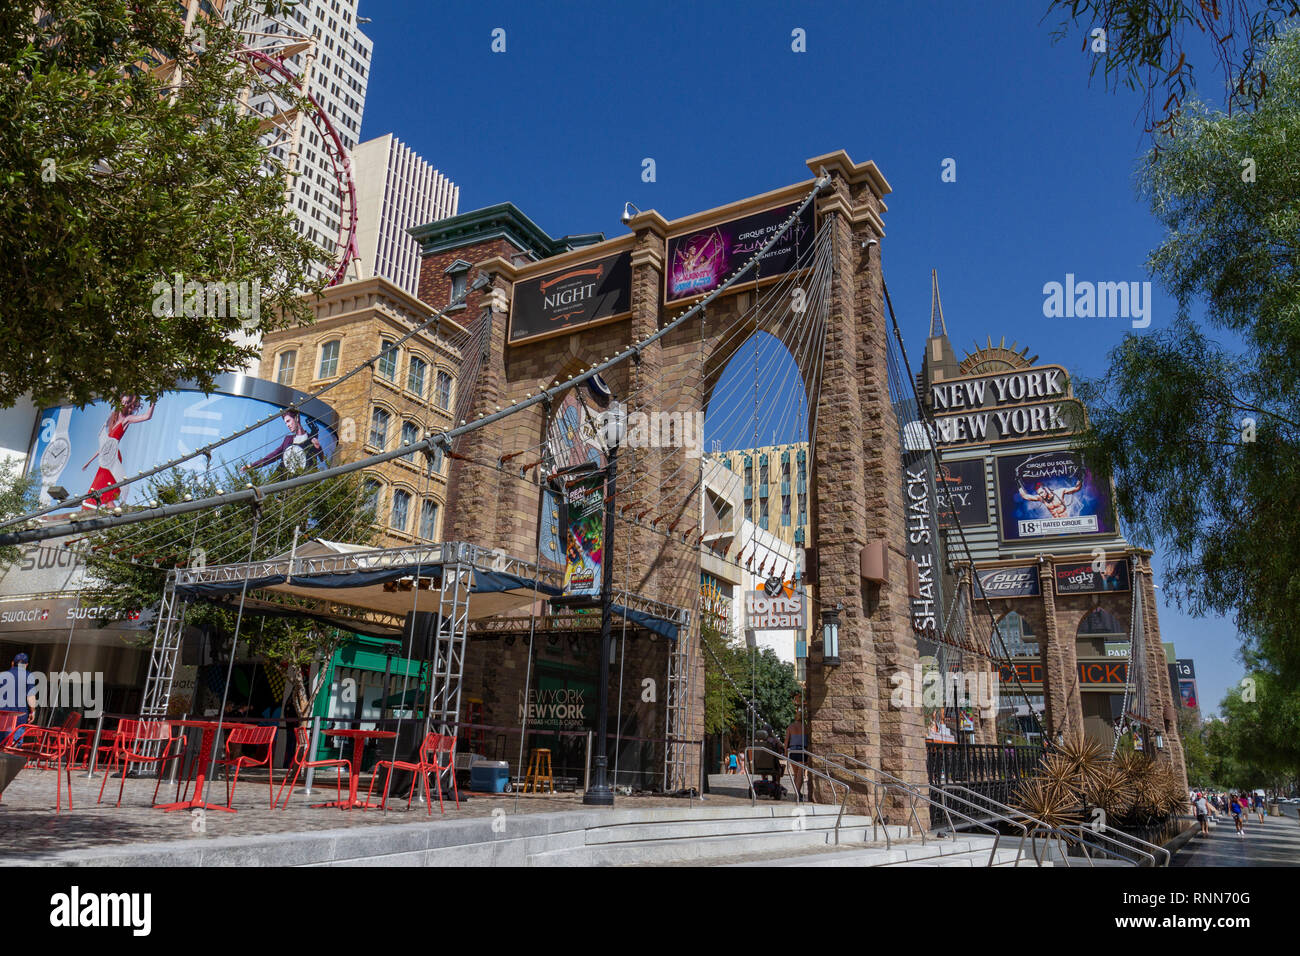 Ponte di Brooklyn modello in scala, parte del New York New York Strip di Las Vegas, Nevada, Stati Uniti. Foto Stock